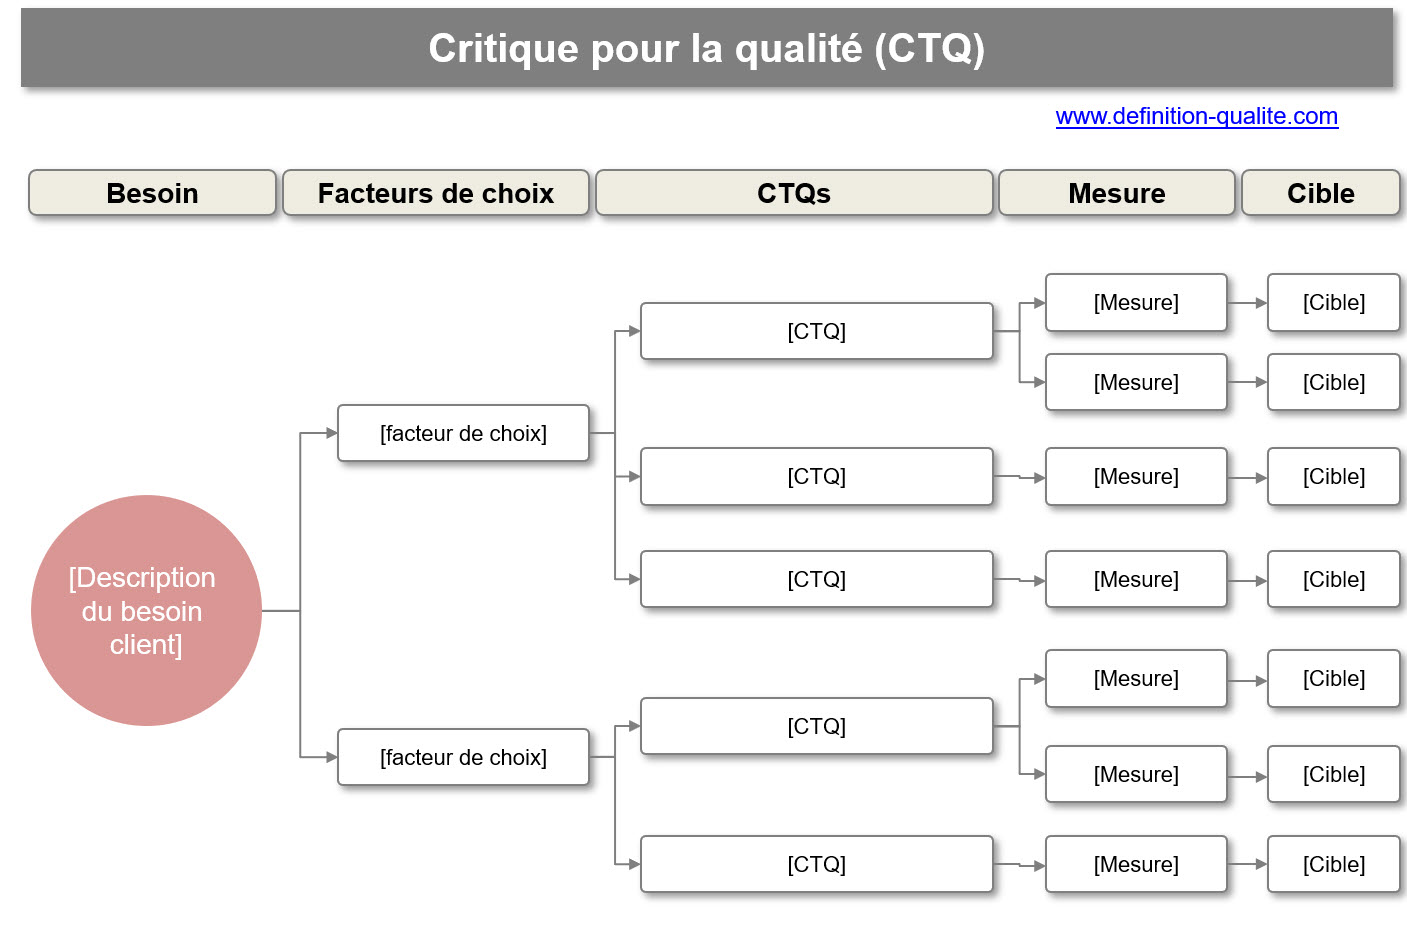 Critique pour la qualité (CTQ)